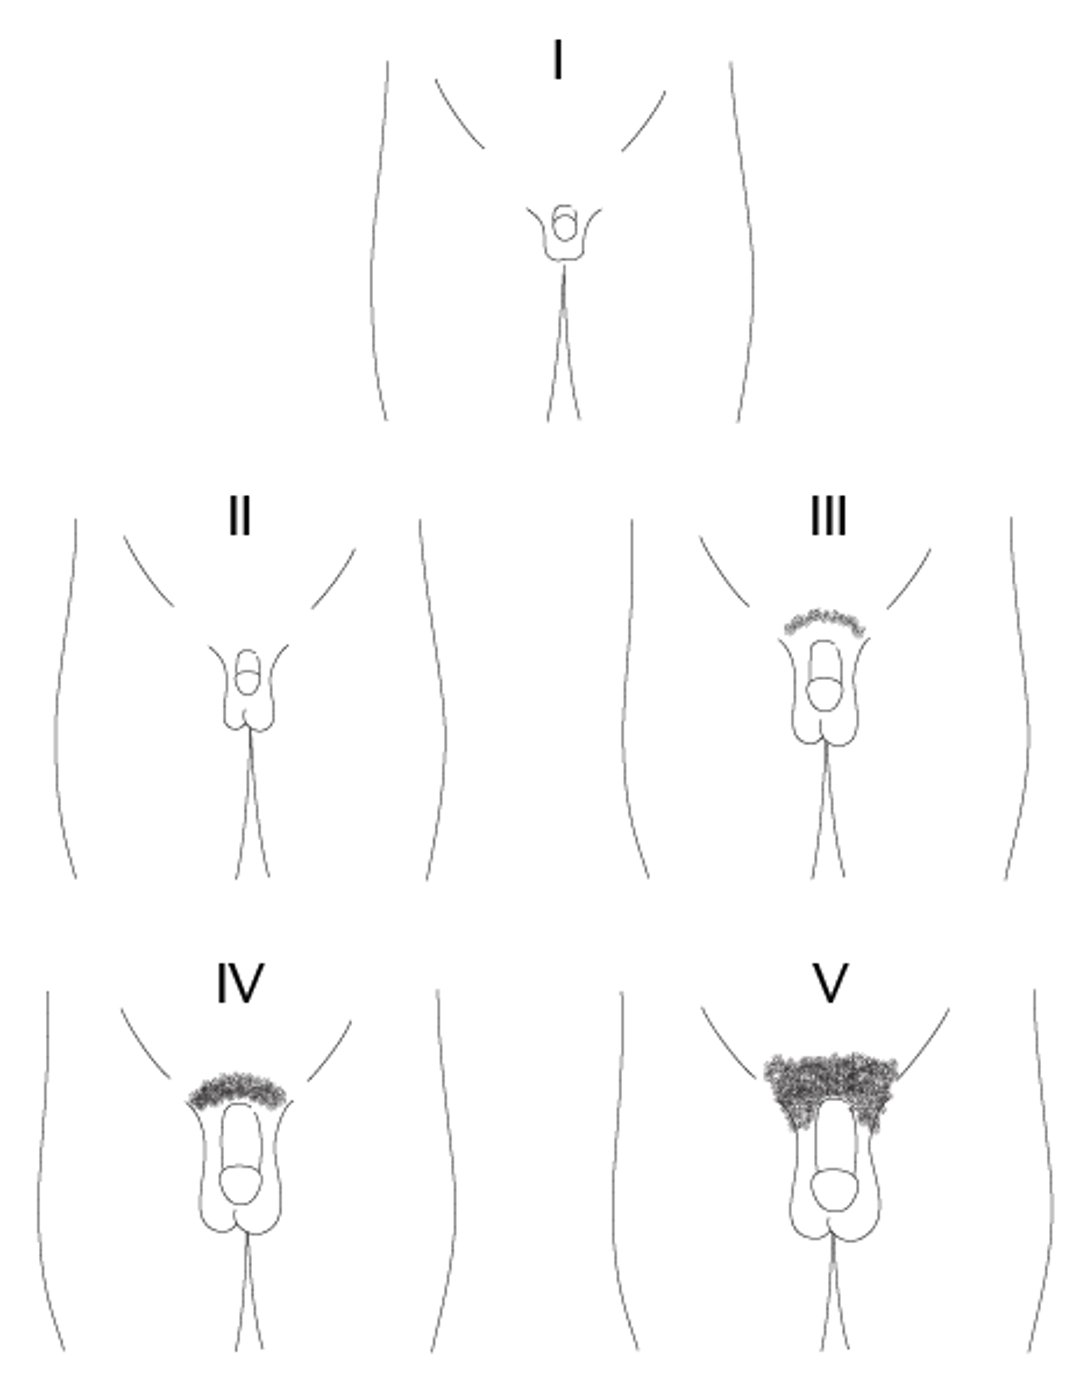 Representación esquemática de los estadios I a V de Tanner de la maduración del pene en los varones